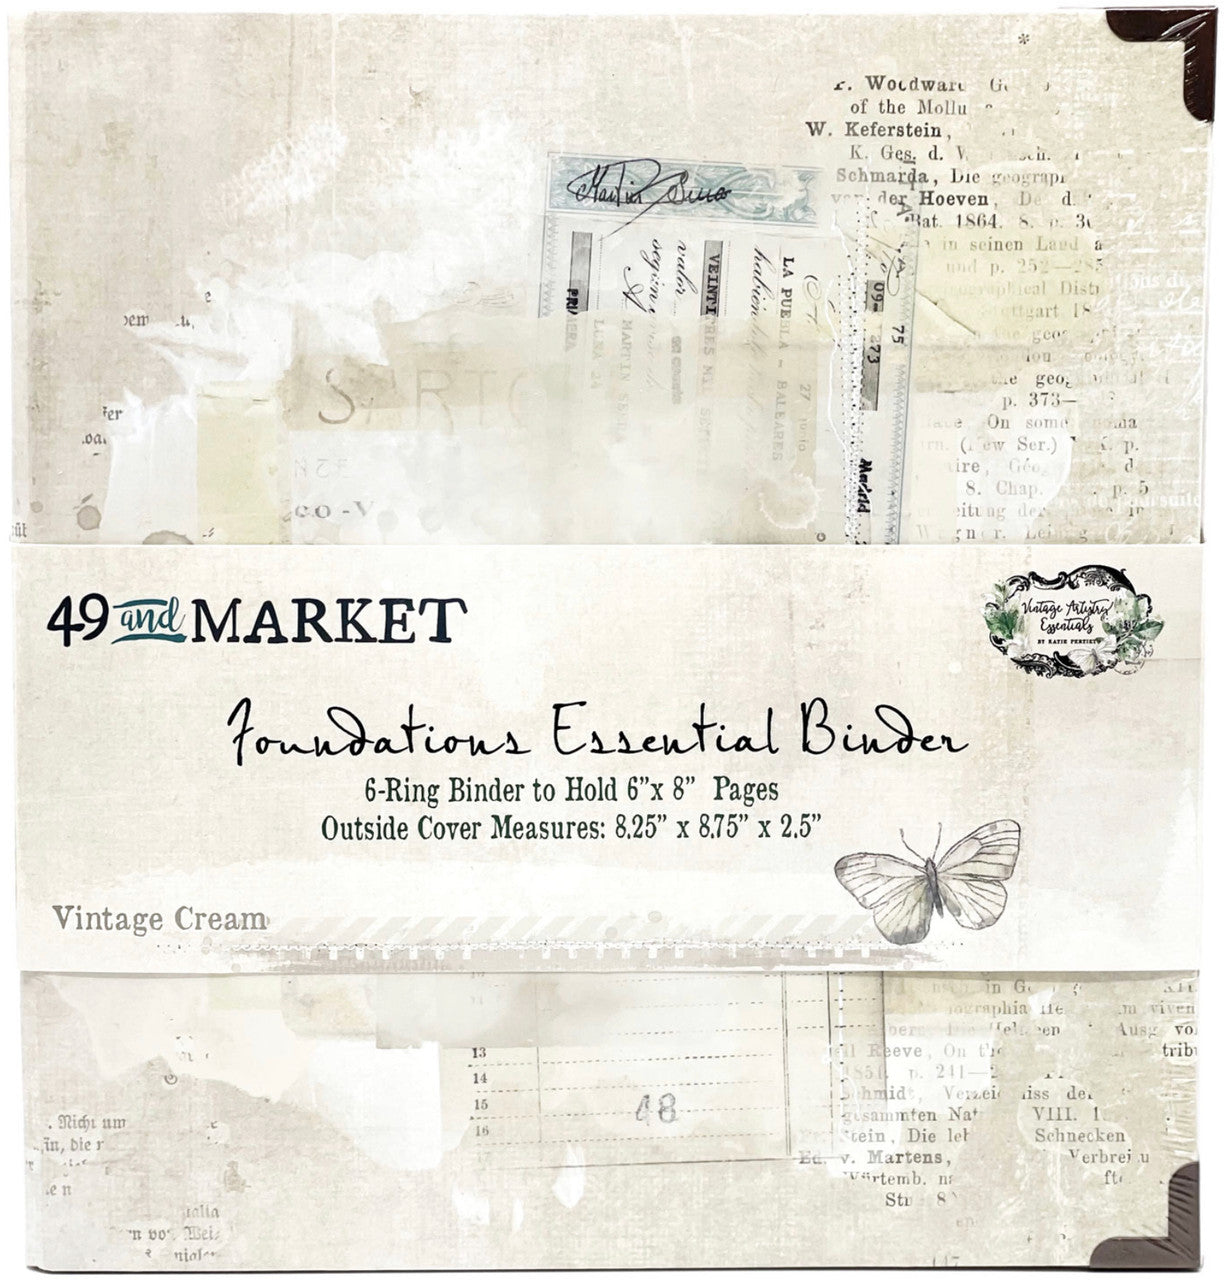 49 & Market Foundations Essential Binder - Vintage Cream